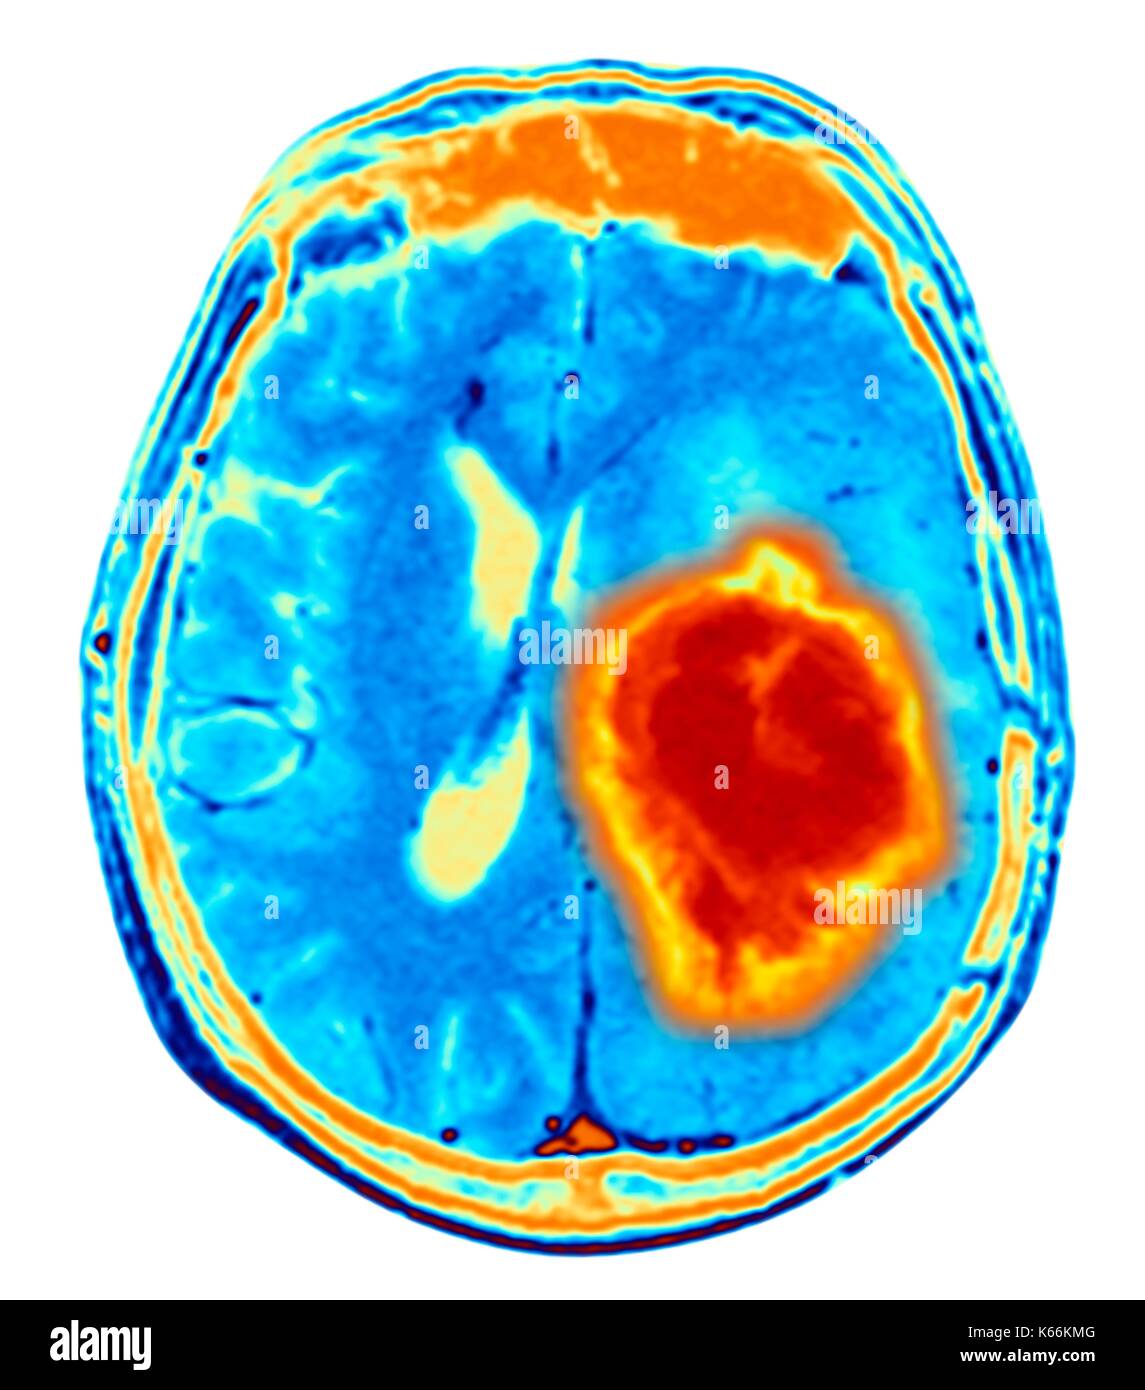 Hirntumor. Farbige Magnetresonanztomographie (MRT) Scan eines axialen Schnitt durch das Gehirn mit einem metastasierten Tumor. Unten links ist der Tumor (rot-gelb) Dieser Tumor innerhalb einer Gehirnhälfte erfolgt ist; die andere Hemisphäre ist auf der rechten Seite. Die Augäpfel - nicht sichtbar - sind oben. Metastasierendem Krebs ist eine Krankheit, die vom Krebs an anderer Stelle im Körper. Metastasierendem malignen Hirntumoren sind. In der Regel verursachen Sie Gehirn Kompression und Nervenschäden Stockfoto